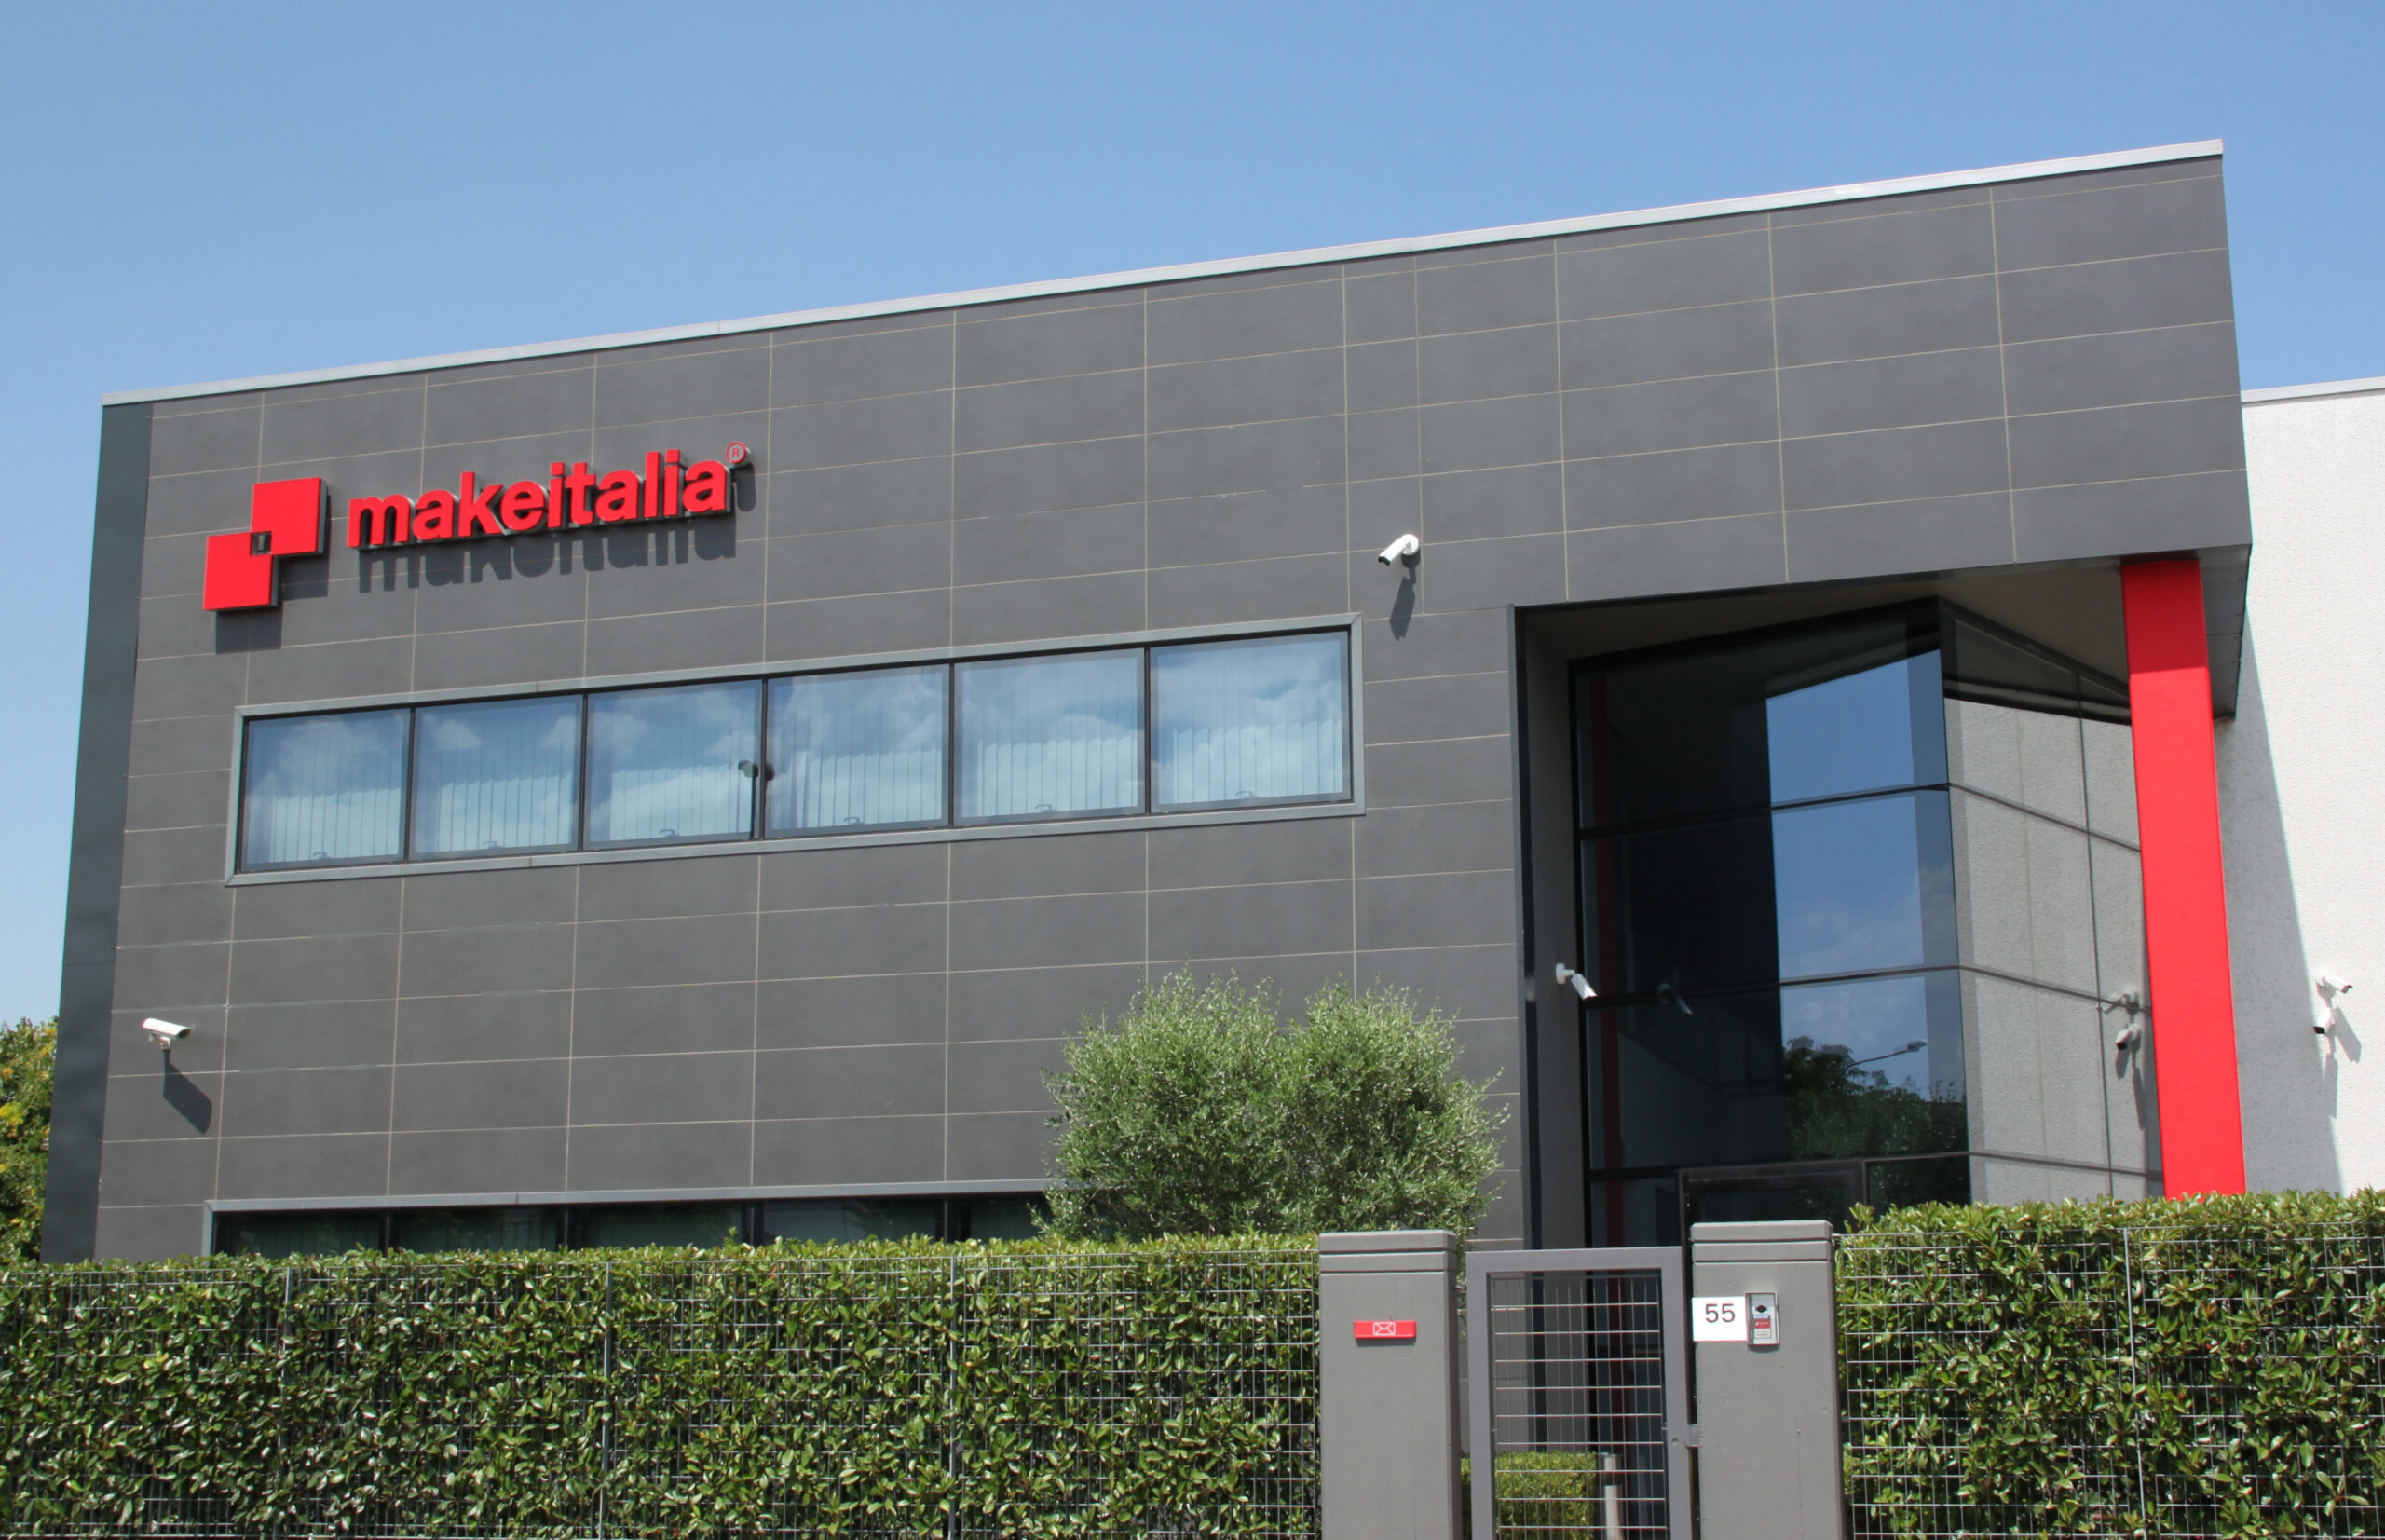 Makeitalia inaugurates the new company headquarters in Modena